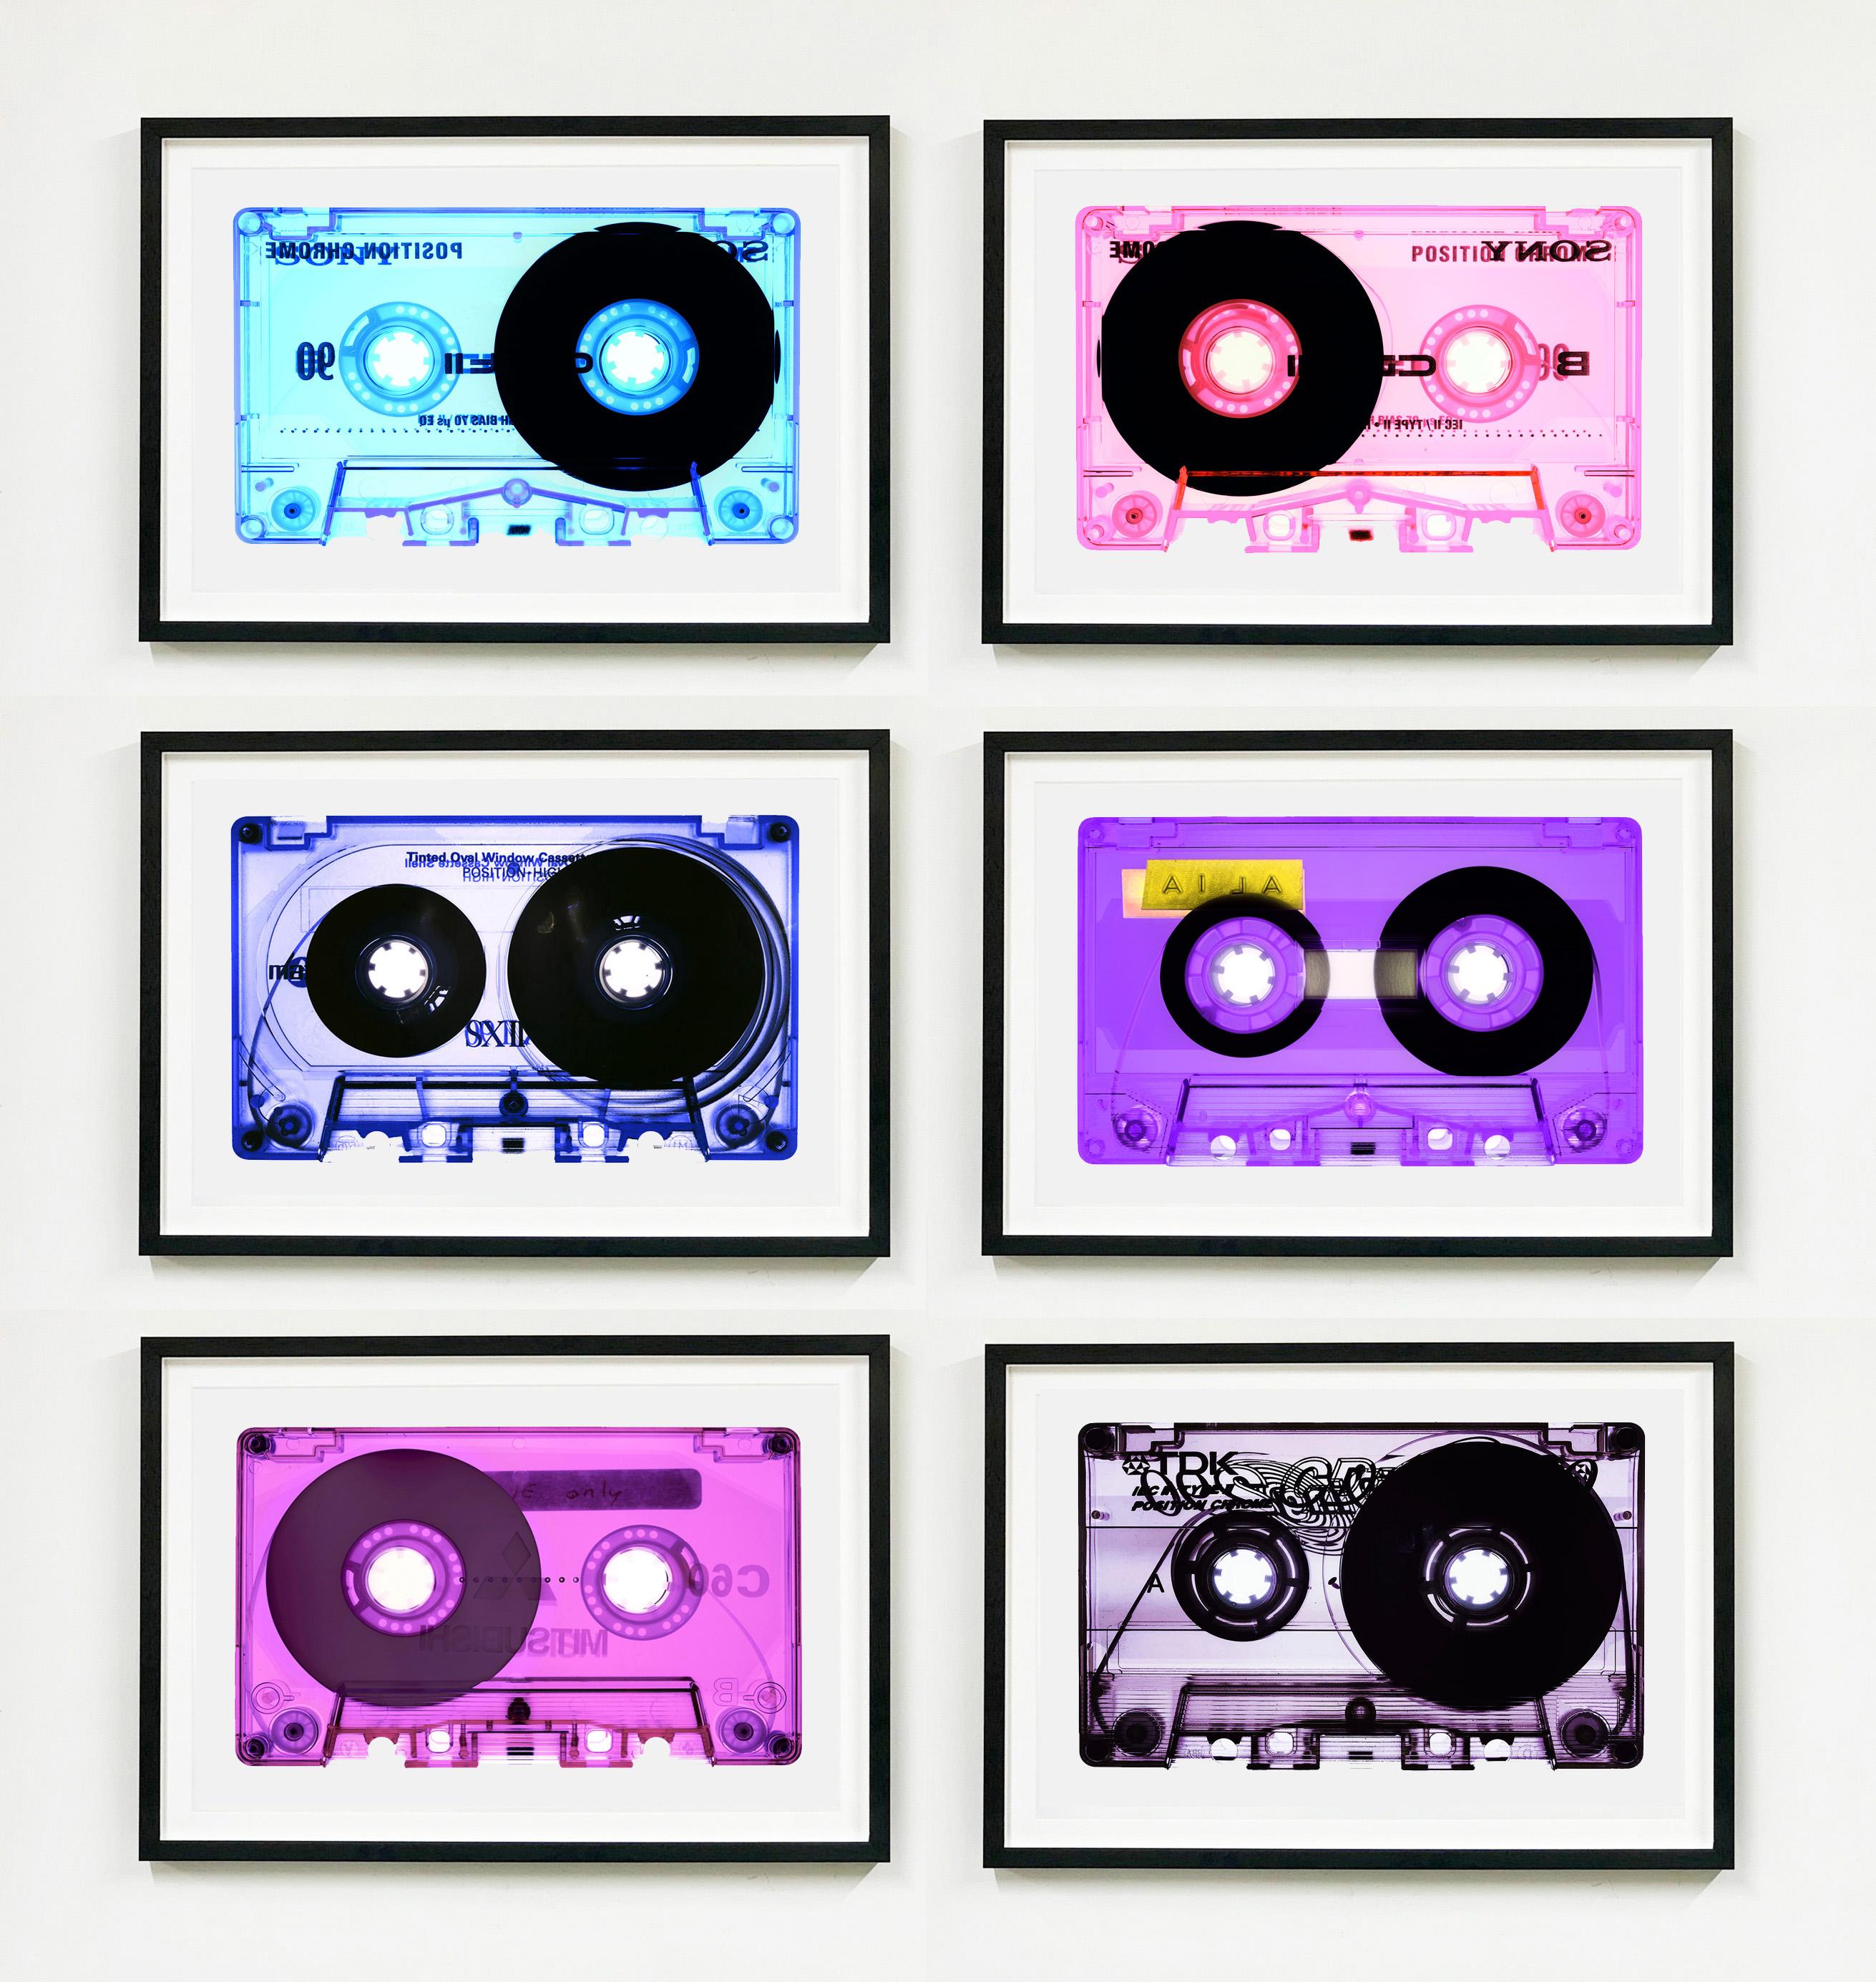 AILA Lilac, aus der Heidler & Heeps Tape Collection - The B Sides.
Die Kollaborationen von Heidler & Heeps sind kreative Repräsentationen von Natasha Heidler und Richard Heeps' persönlicher Vergangenheit und ihrer Persönlichkeiten. Tonbänder spielen